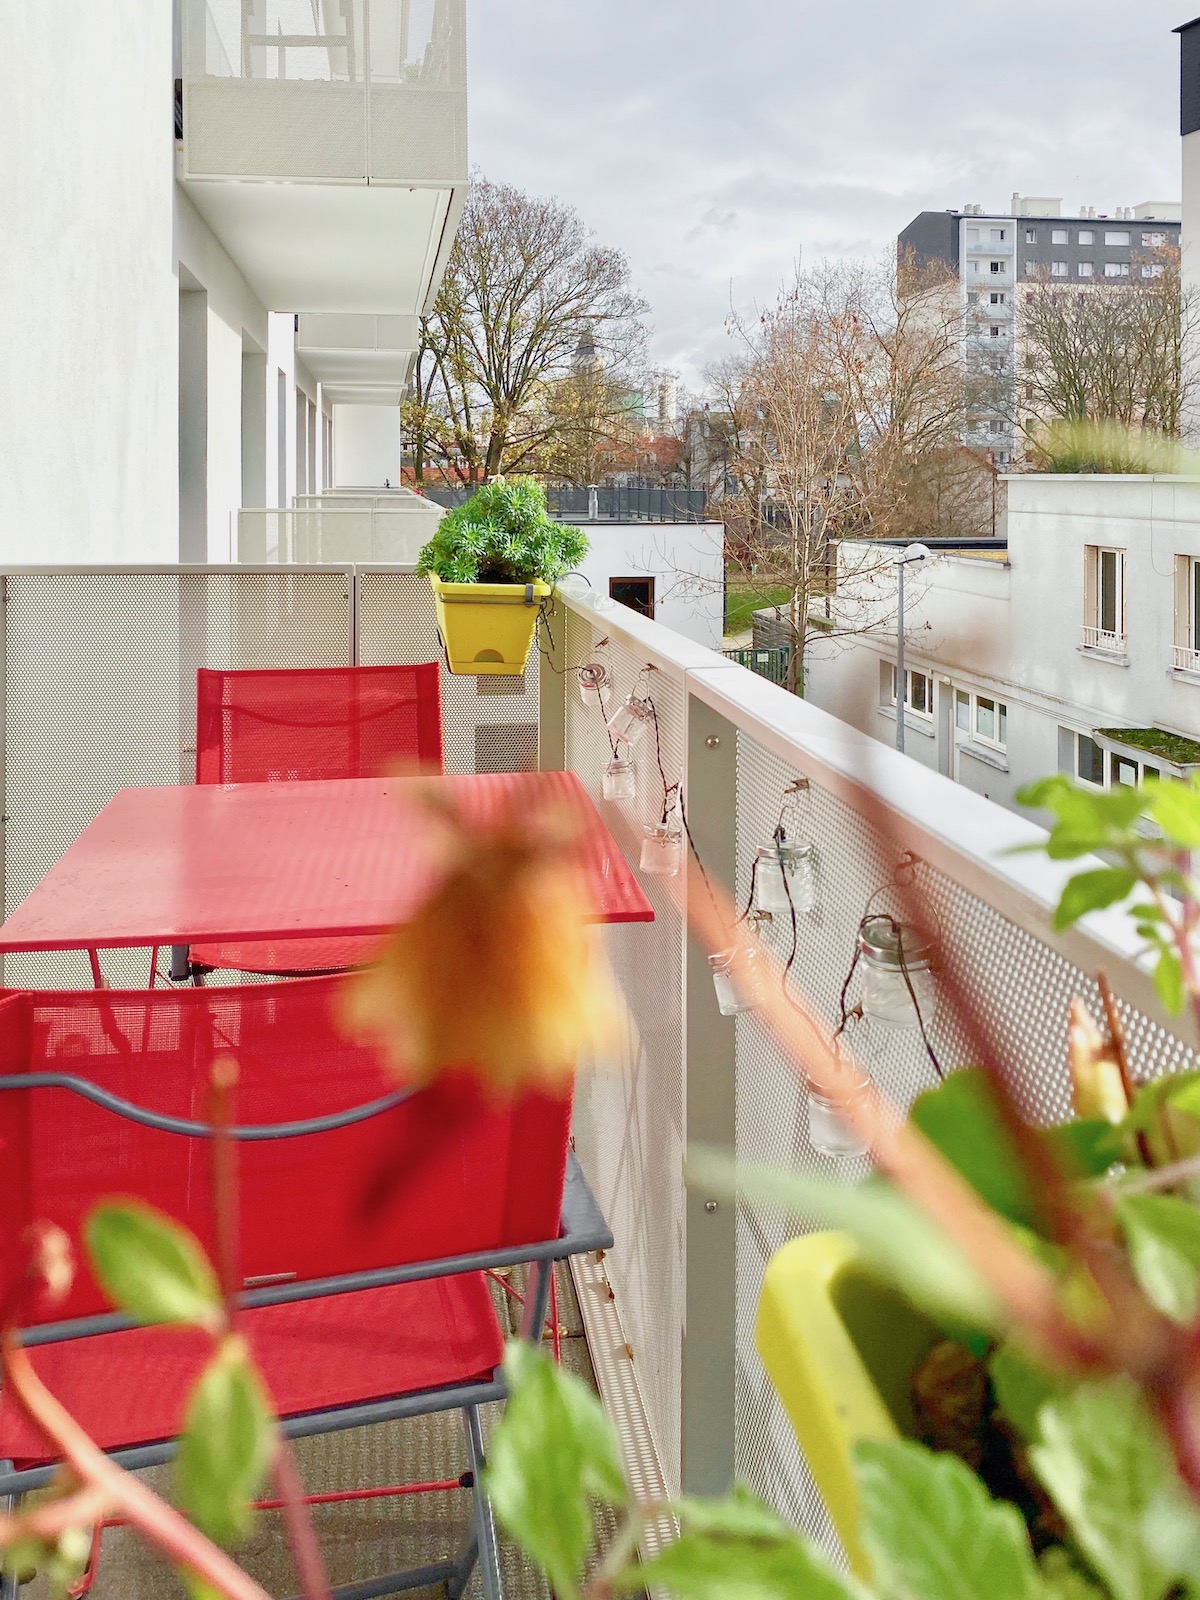 Basilique Saint-Denis balcon aménagement balcon table chaise rouge lafuma mobilier guirlande led bocal verre